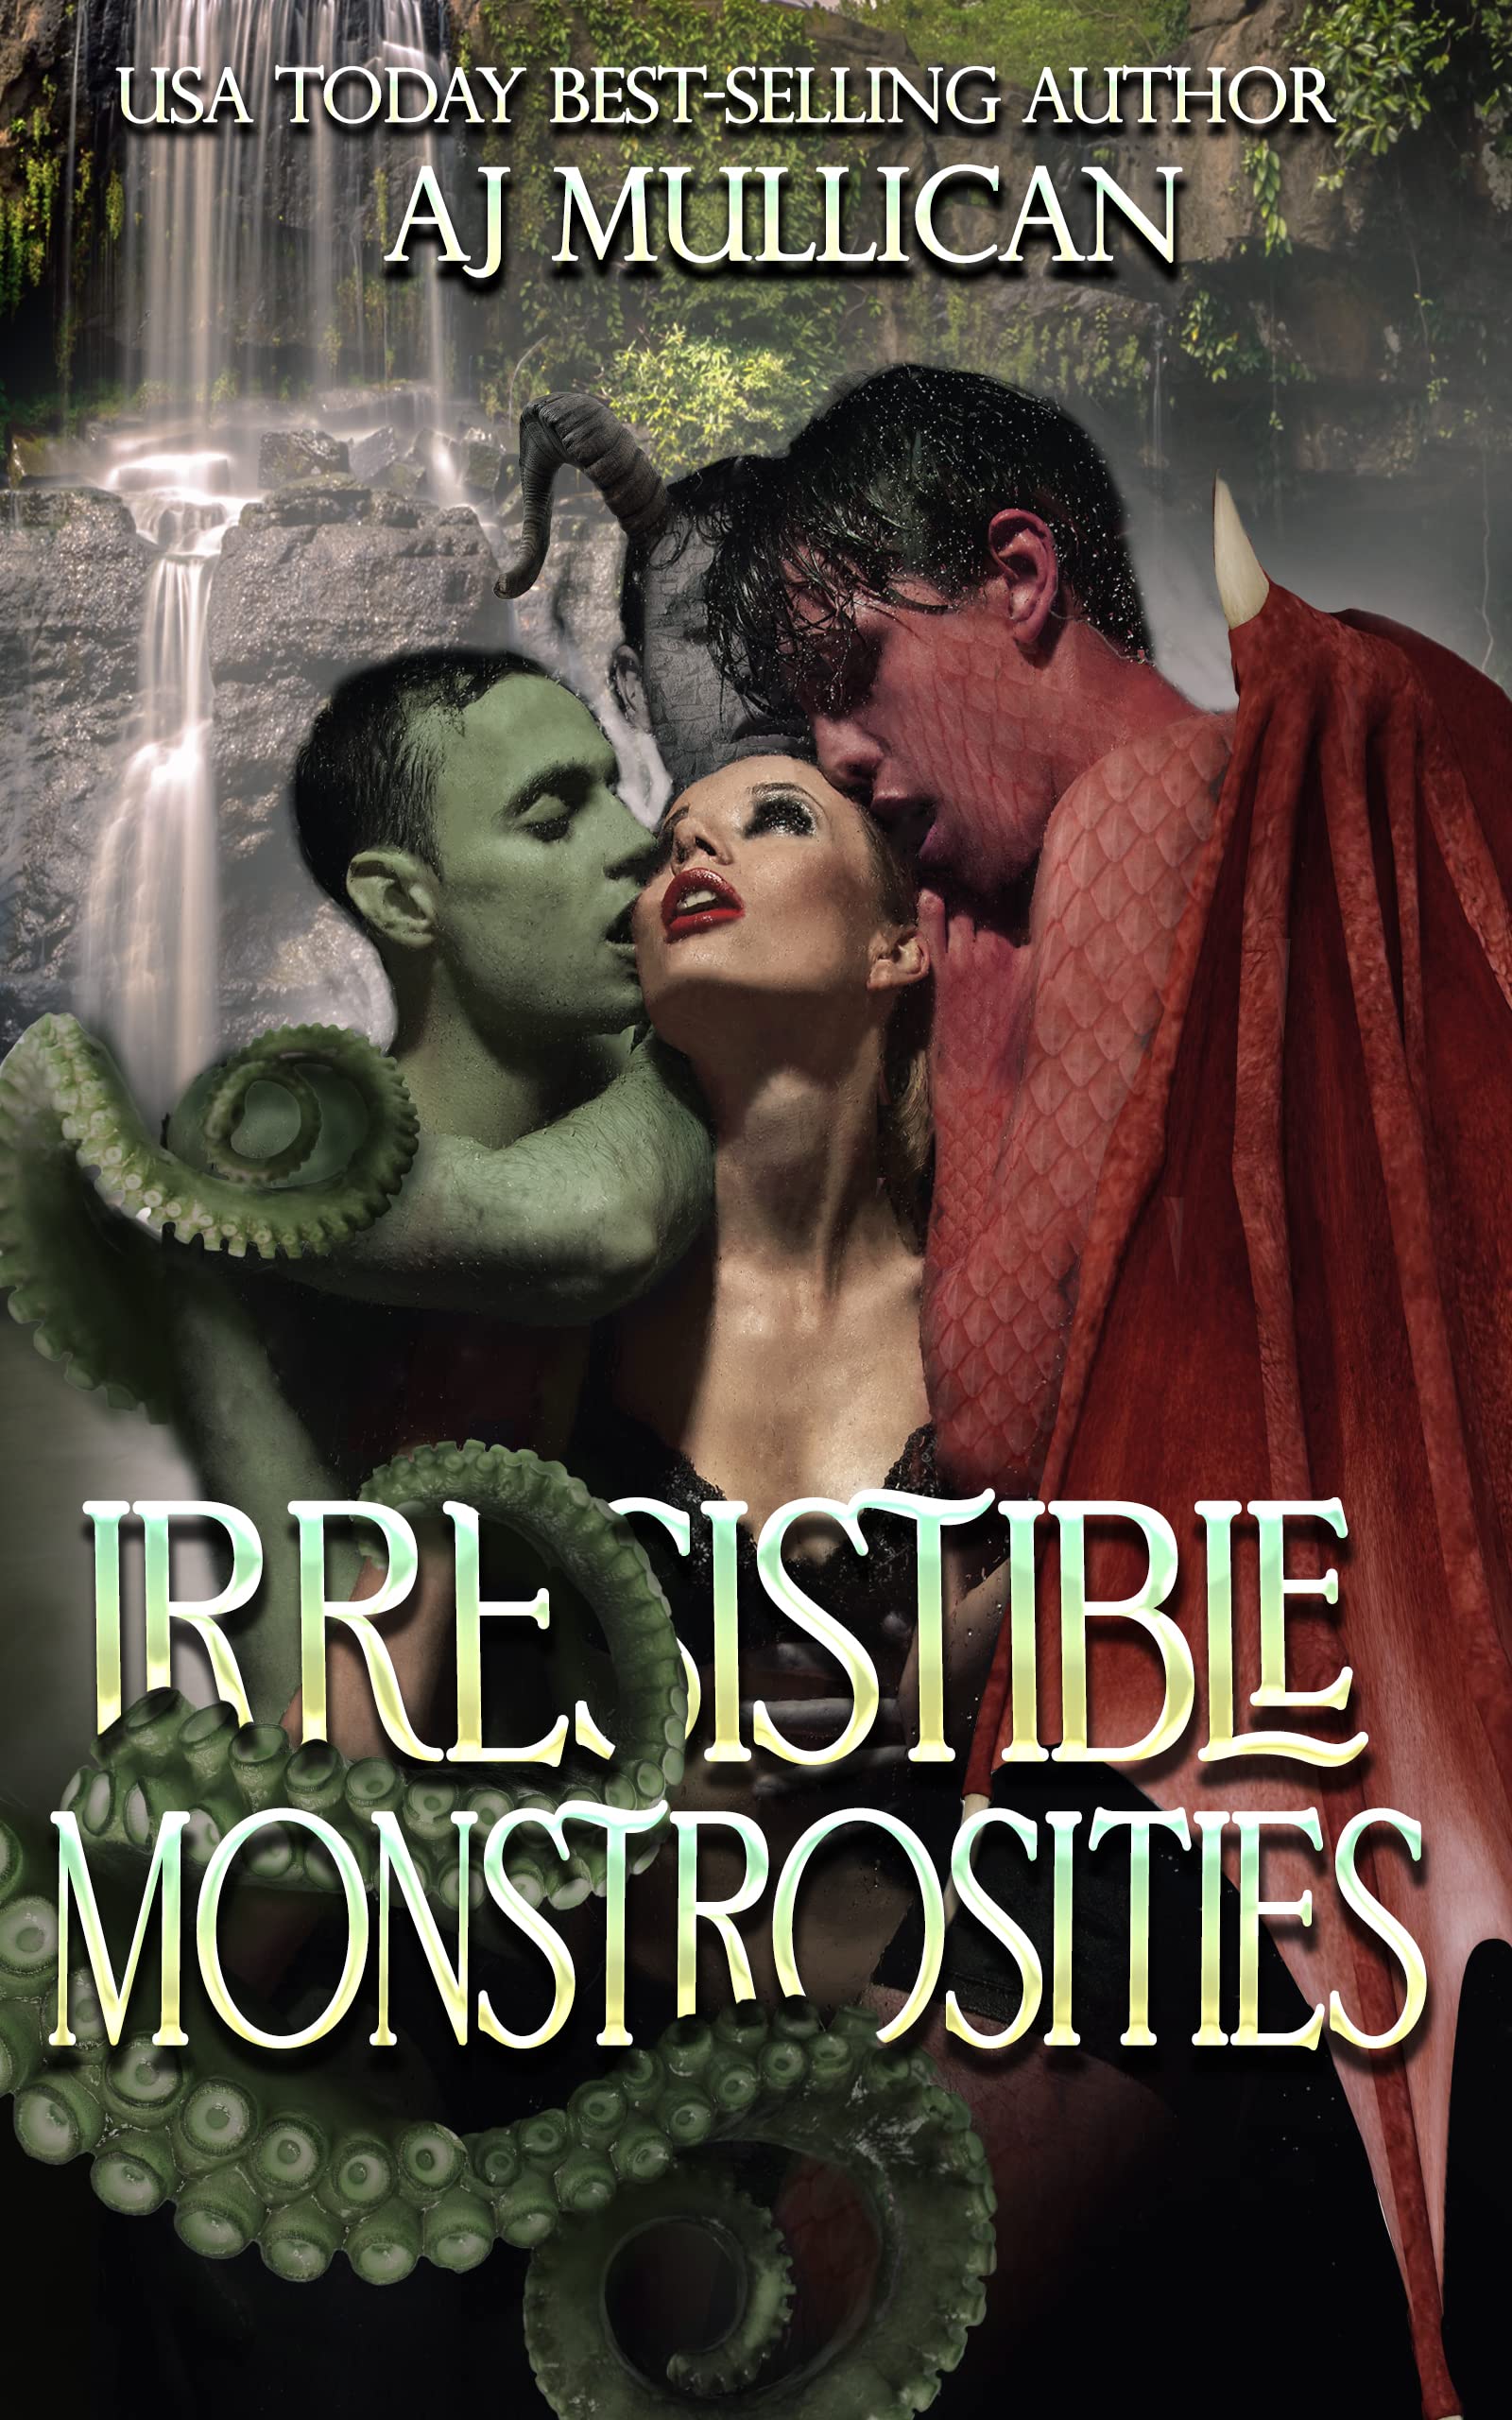 Irresistible Monstrosities by AJ Mullican